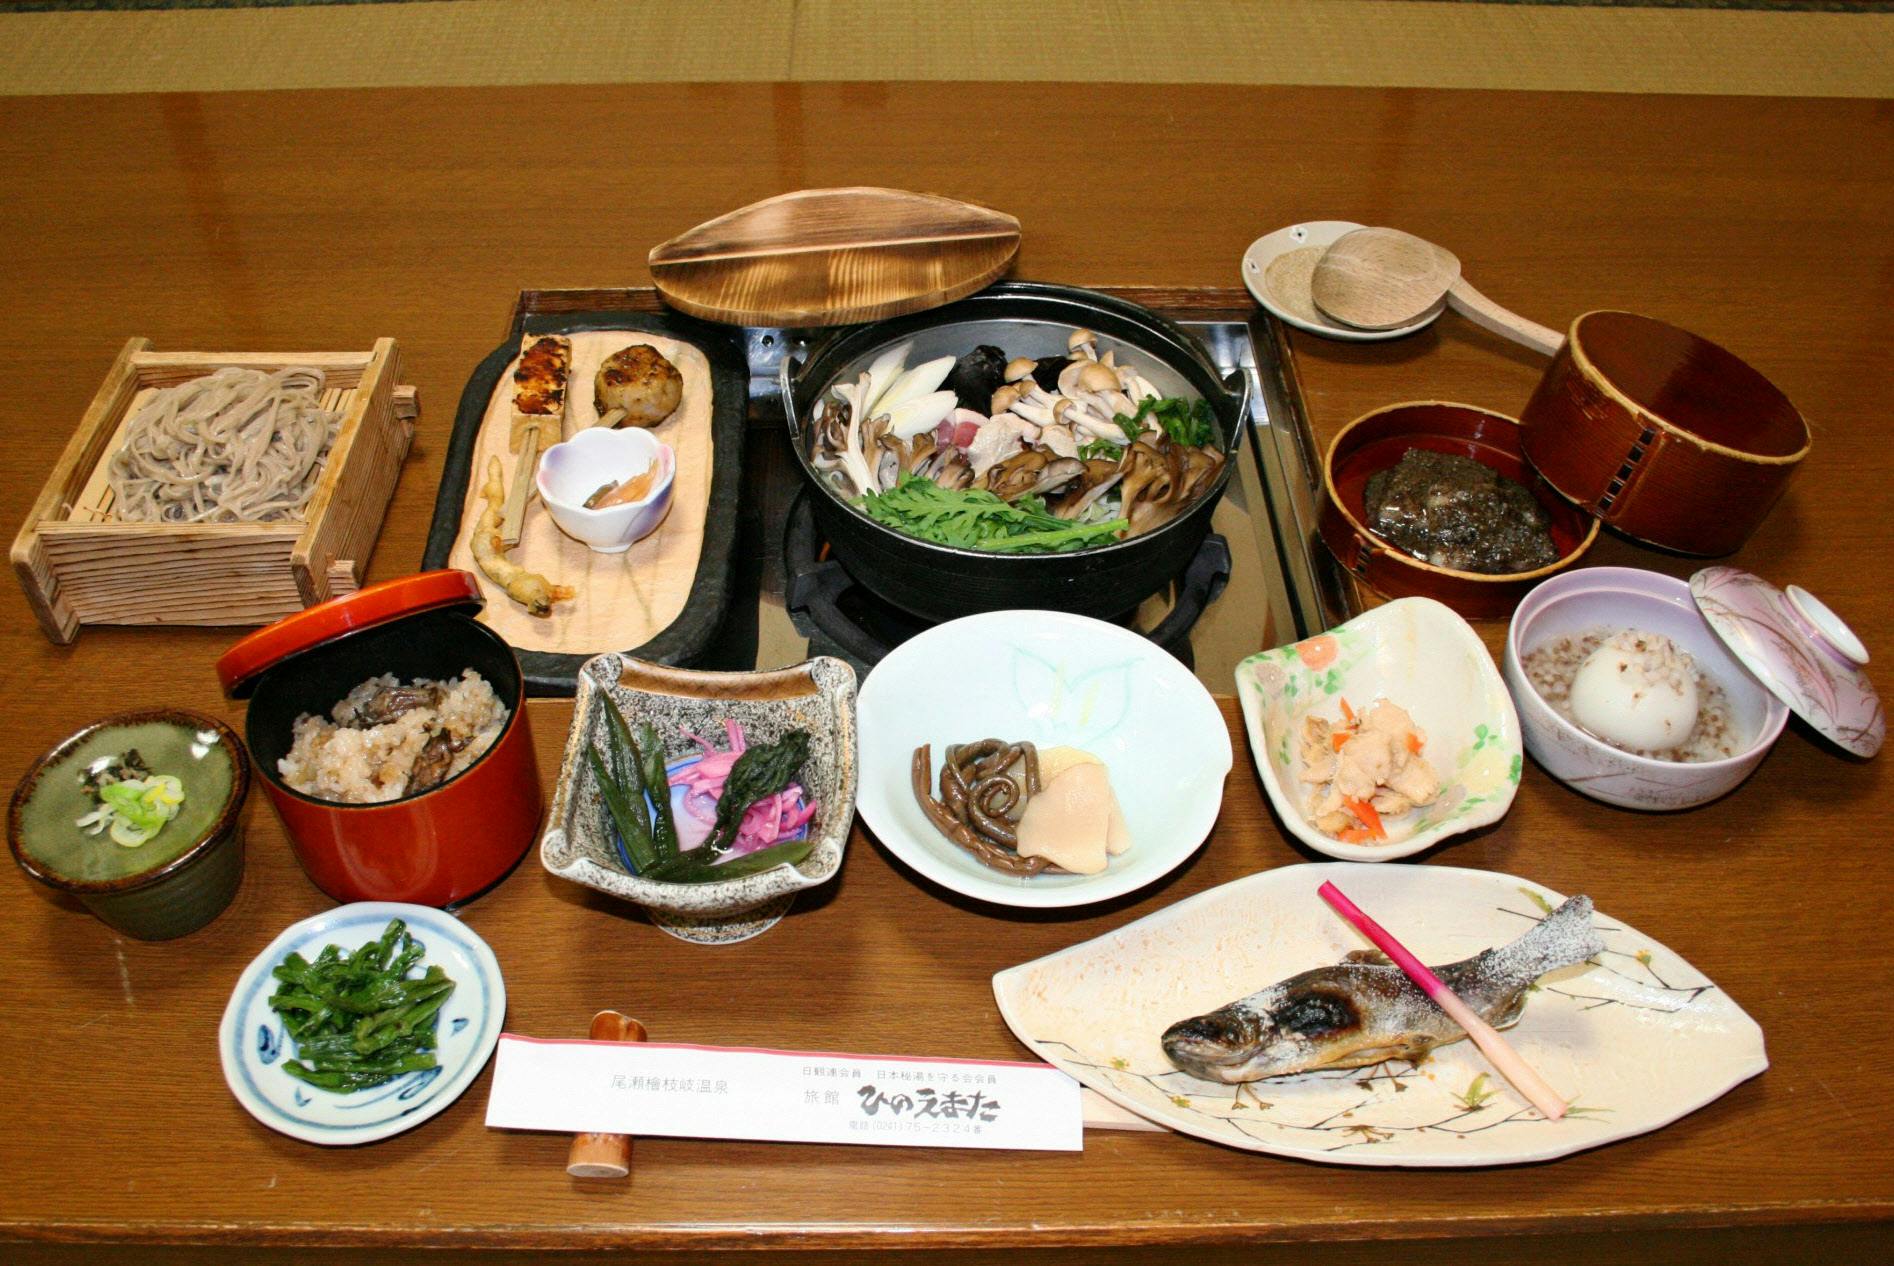 サンショウウオ 山菜 福島の秘境に 山人料理 トラベル Nikkei Style